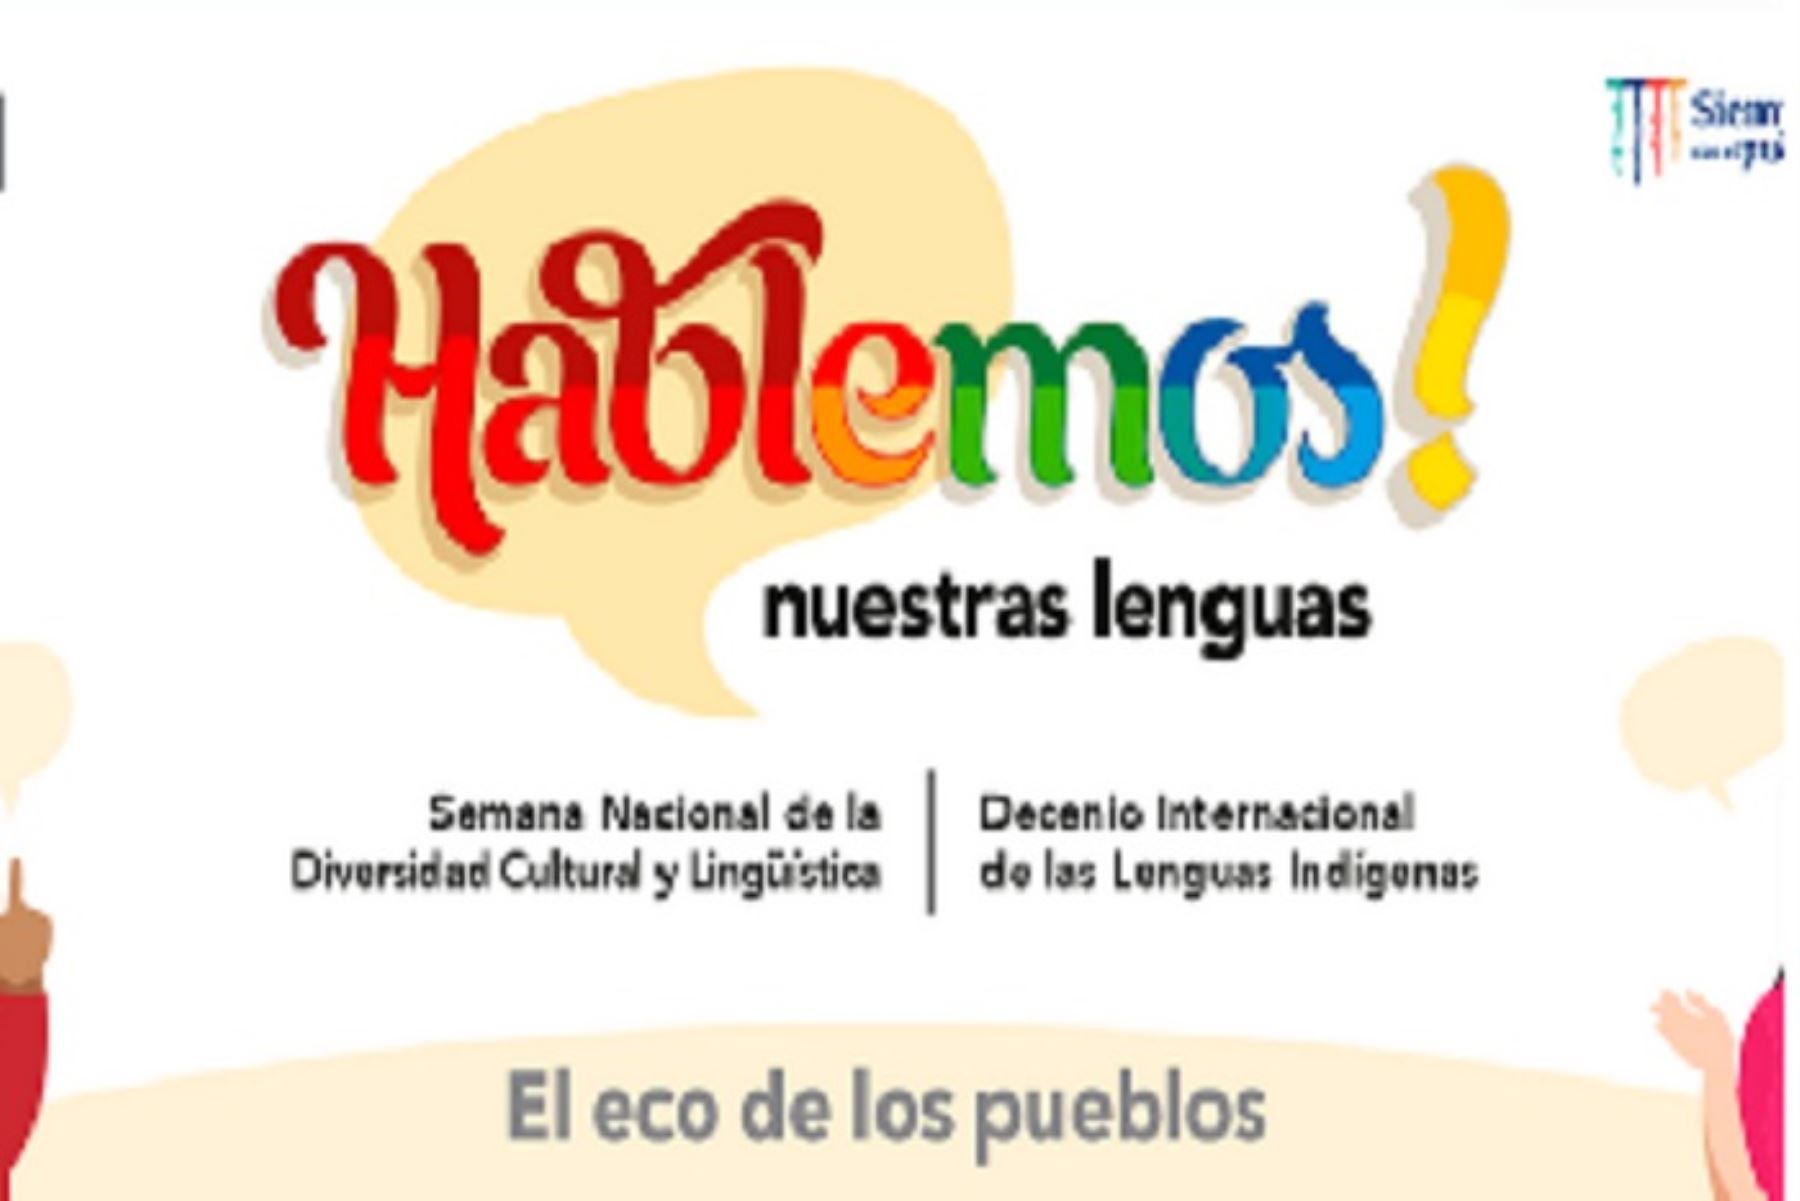 El viernes 27 de mayo se lanzará oficialmente el Decenio Internacional de Lenguas Indígenas en el Perú en la ciudad de Huamanga, región Ayacucho.